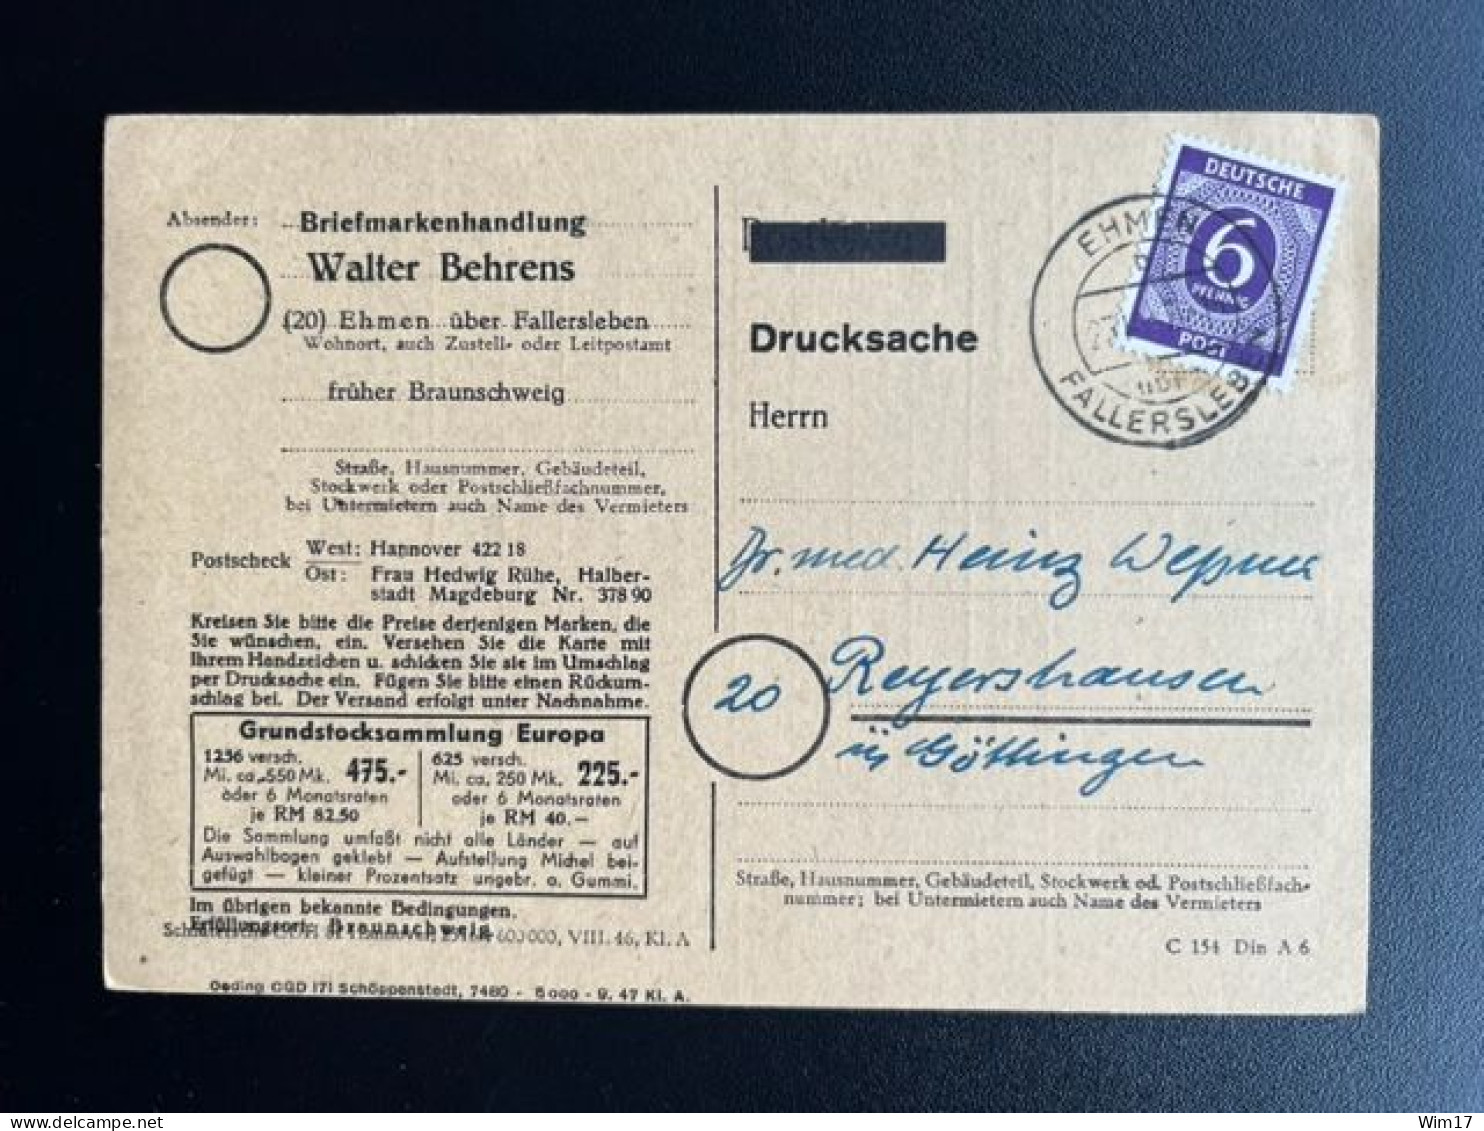 GERMANY 1947 POSTCARD EHMEN TO REYERSHAUSEN 23-10-1947 DUITSLAND DEUTSCHLAND - Interi Postali